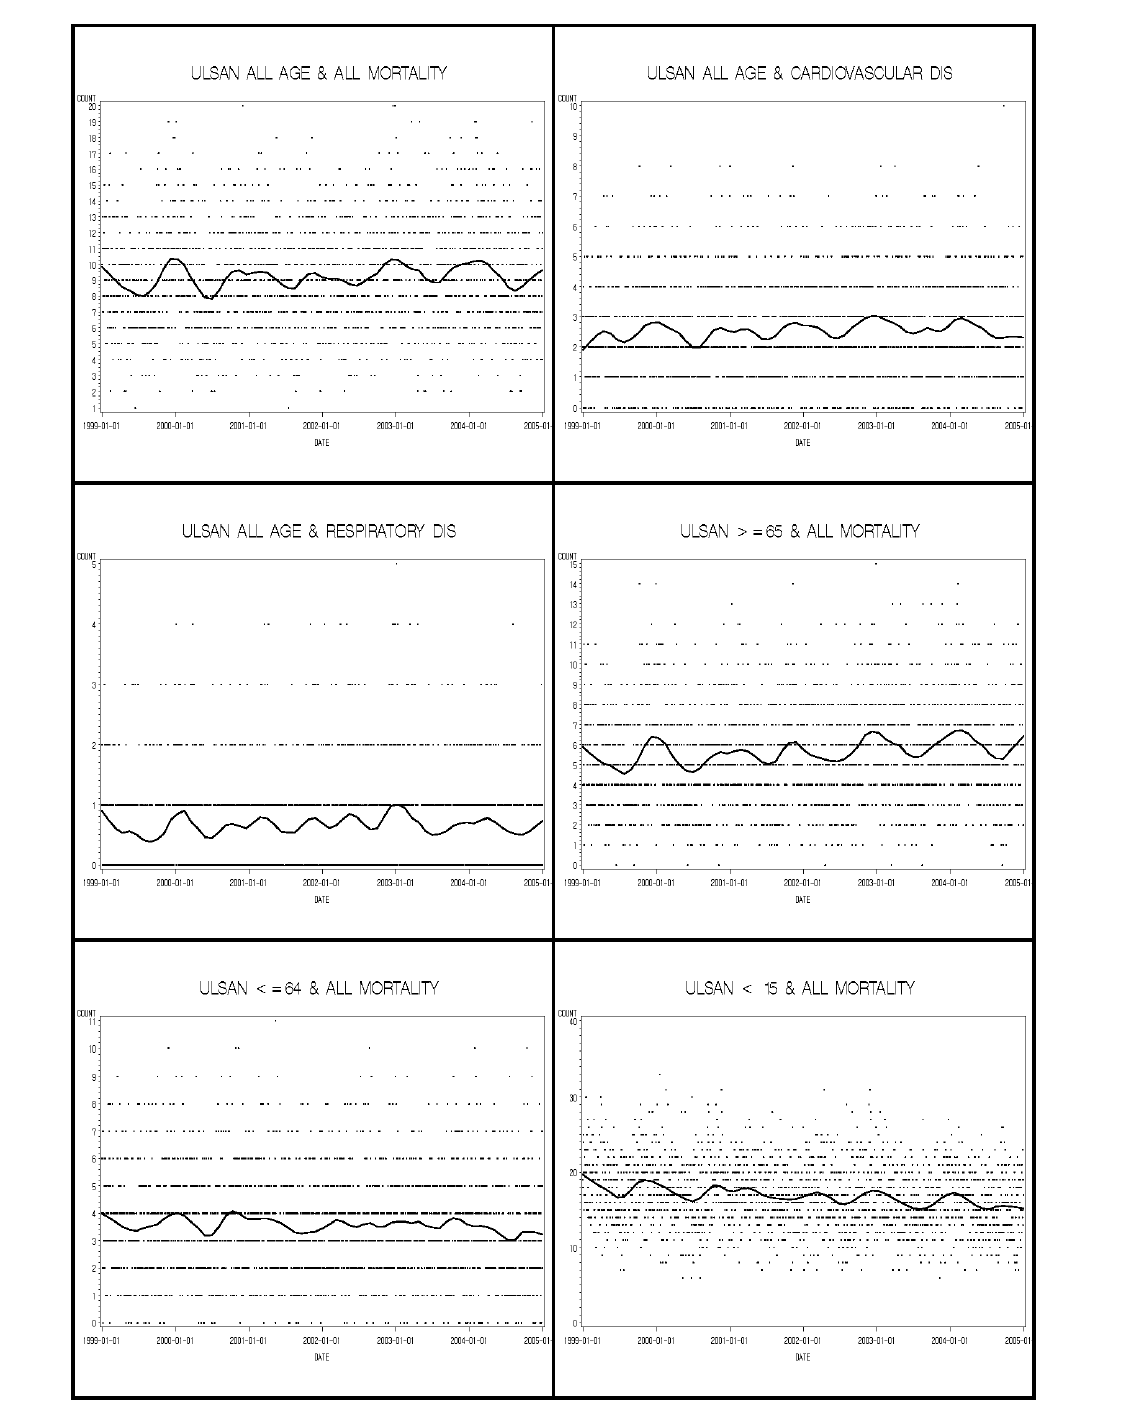 울산광역시 사망원인 및 연령별 사망자수 경향(1999~2004년)